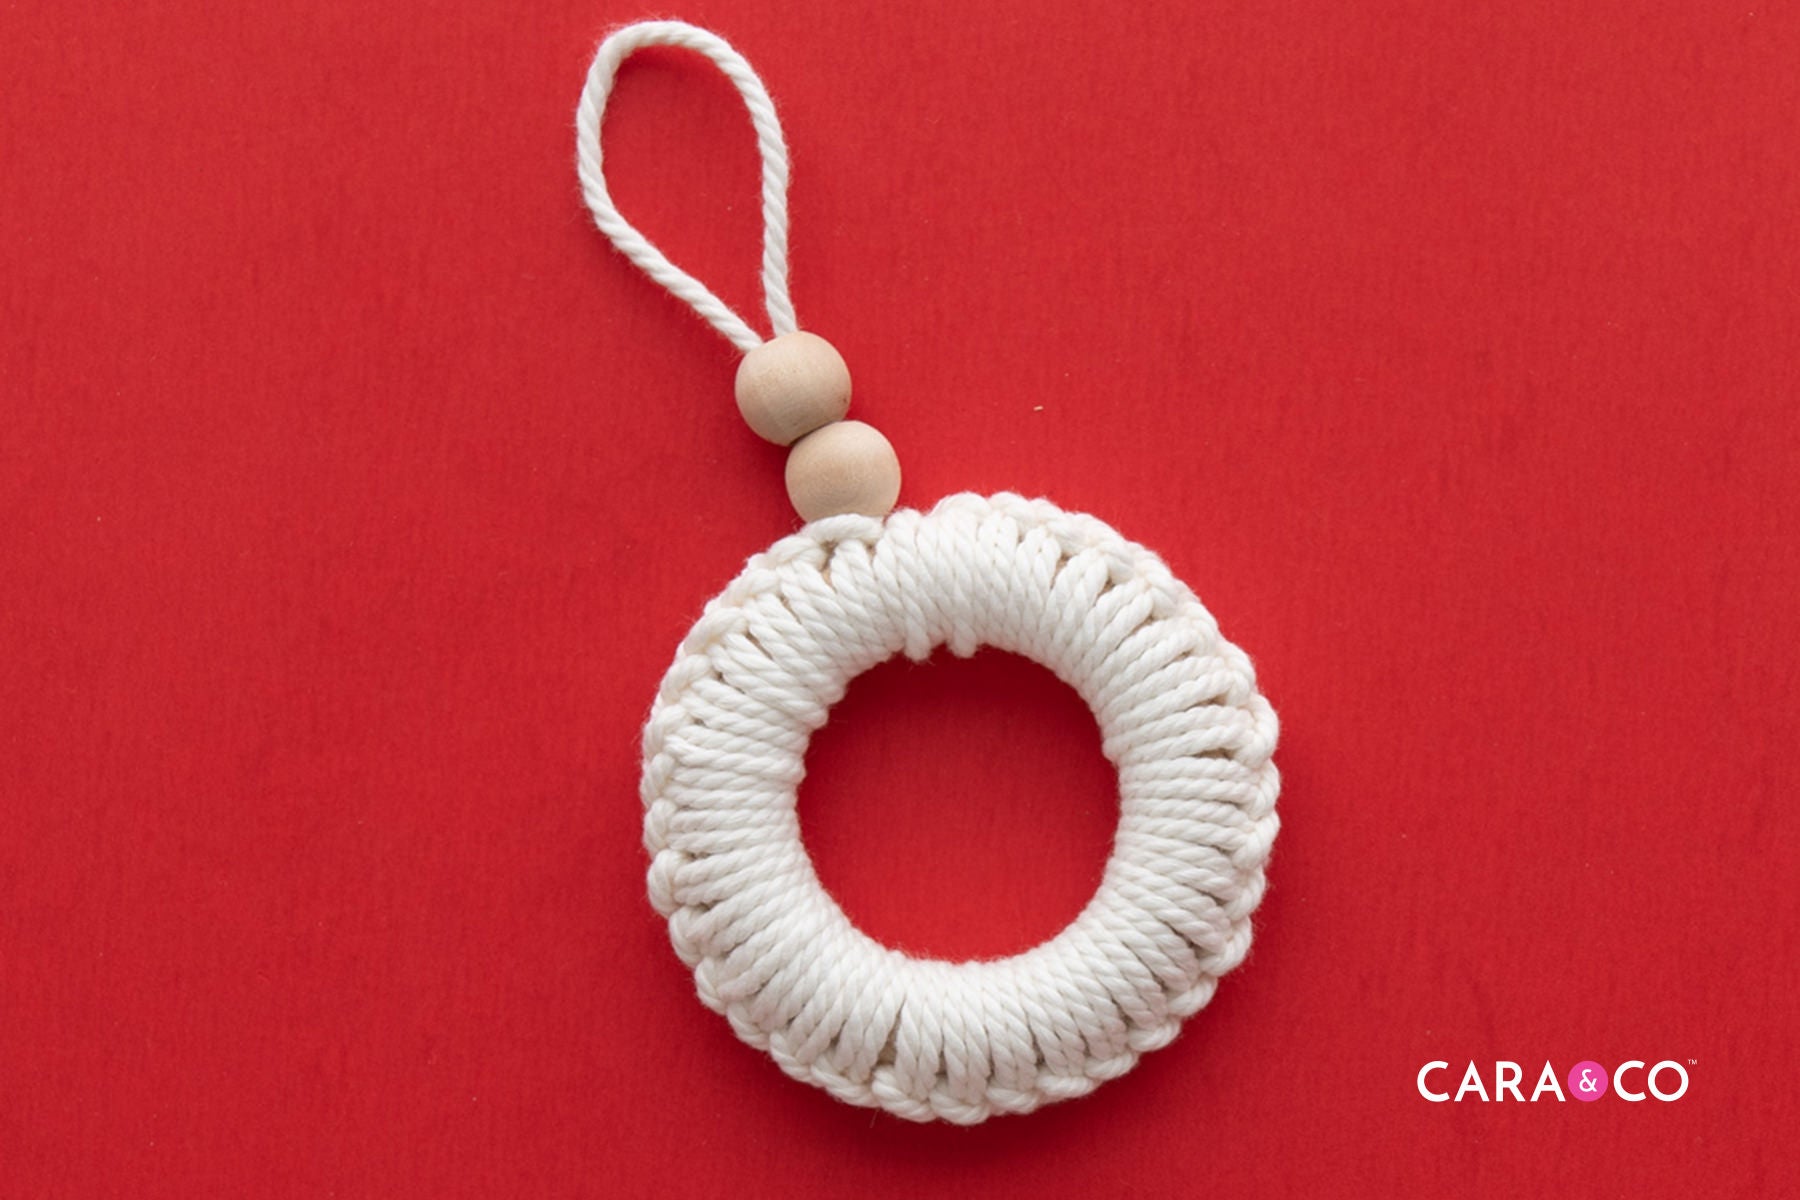 How to make a macrame Christmas ornament - Cara & Co Tutorials